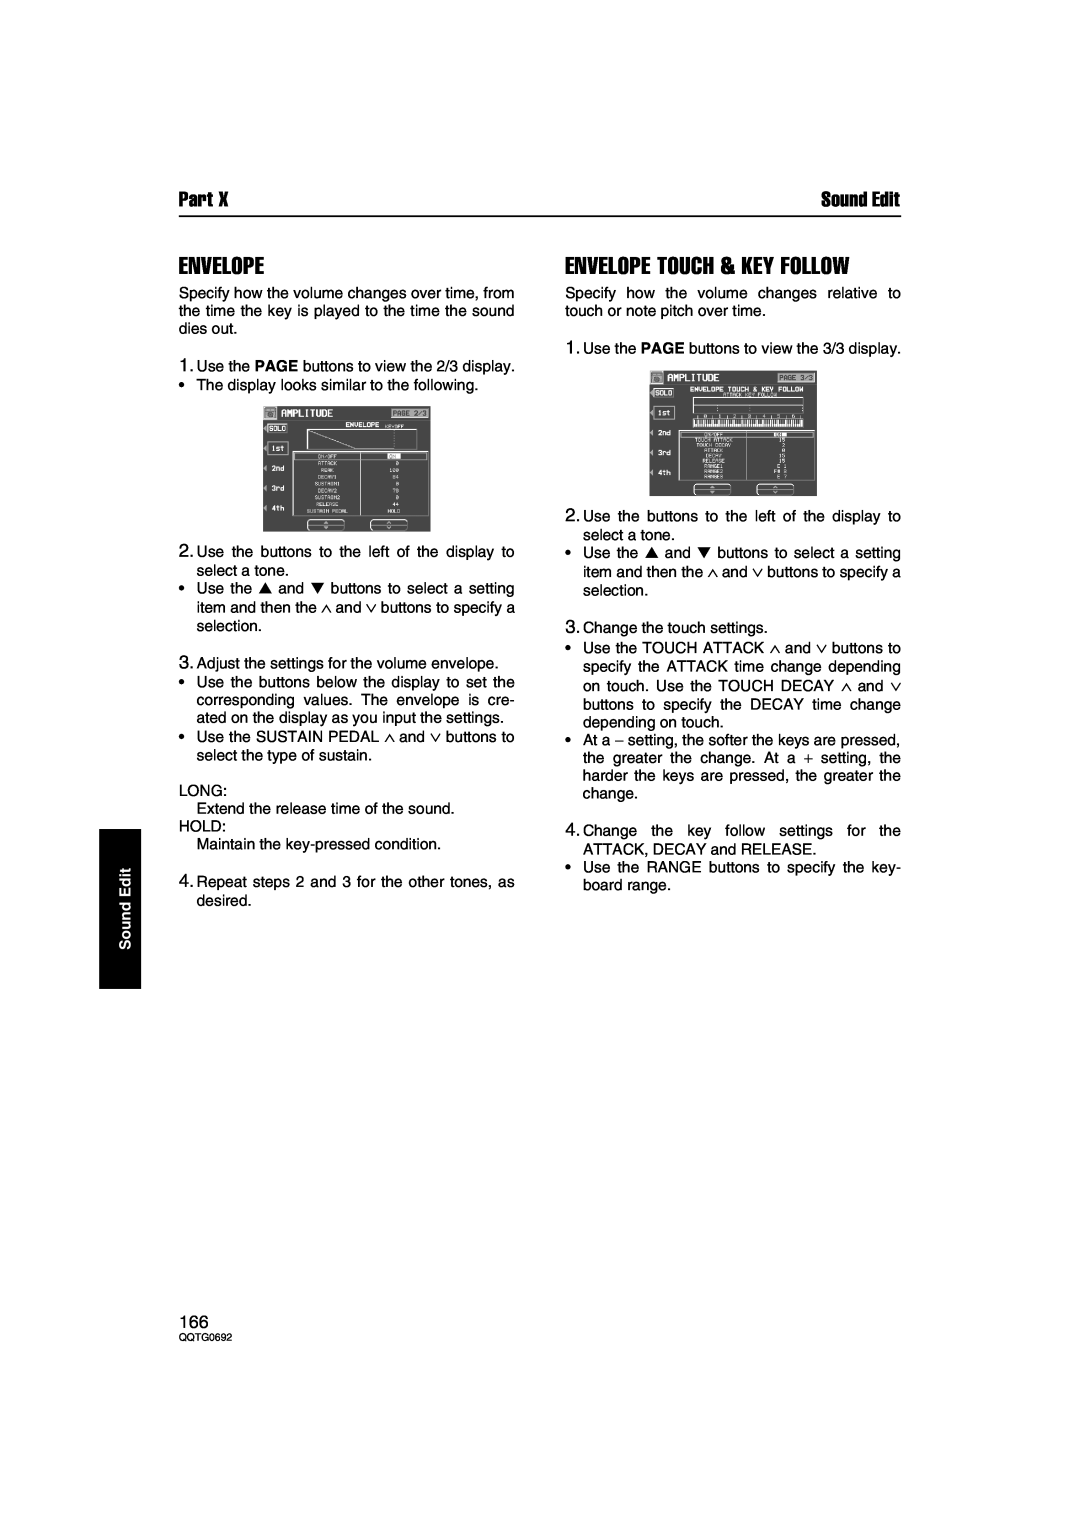 Panasonic SX-KN2600, SX-KN2400 manual Envelope Touch & Key Follow, Part, Sound Edit 